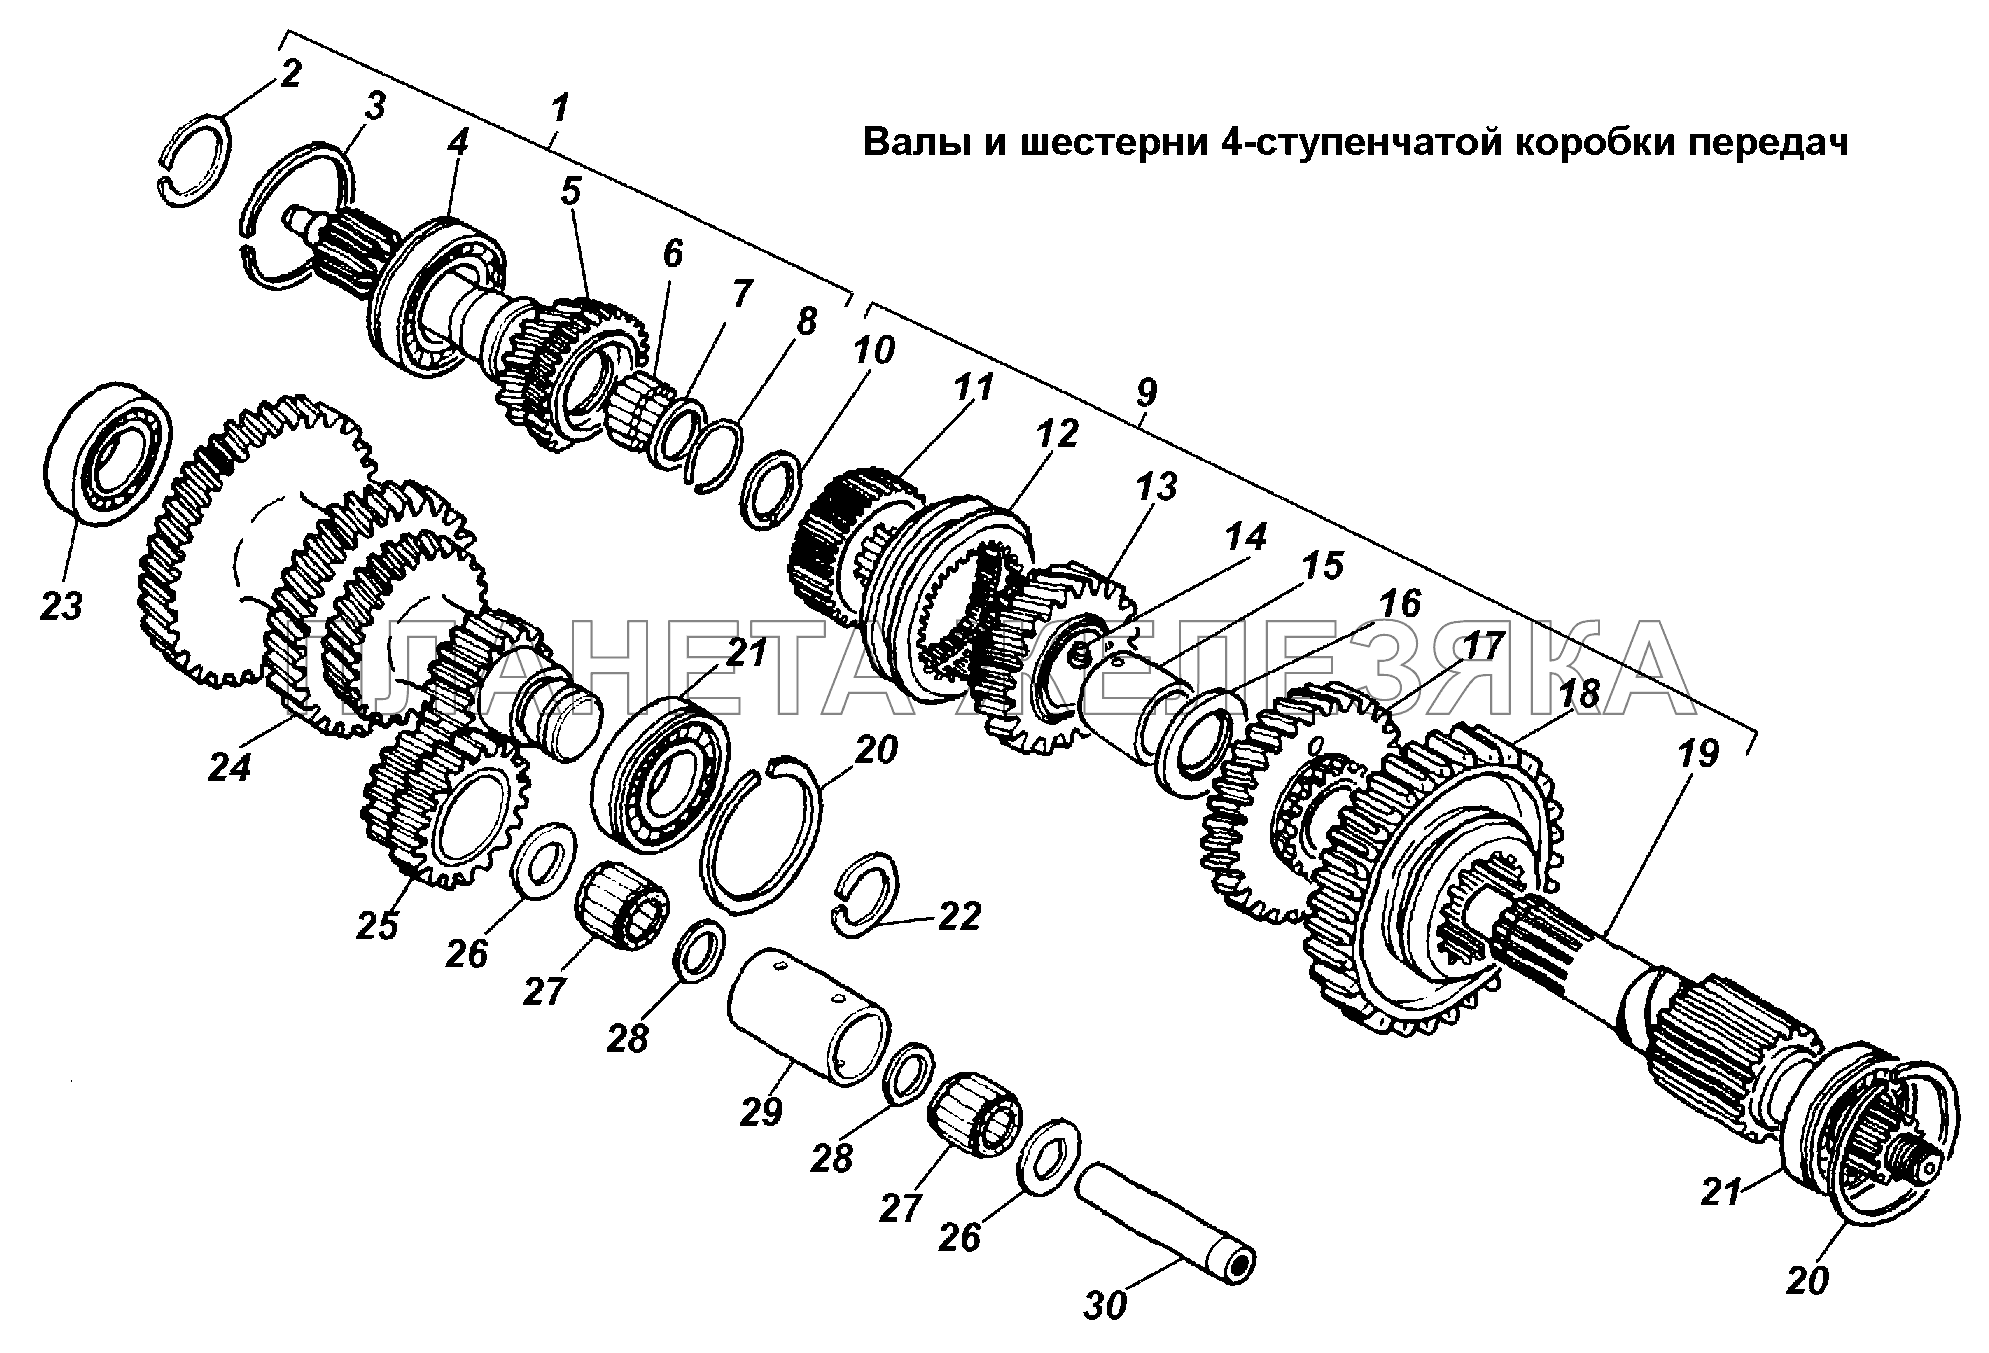 Валы и шестерни 4-ступенчатой коробки передач ГАЗ-3308